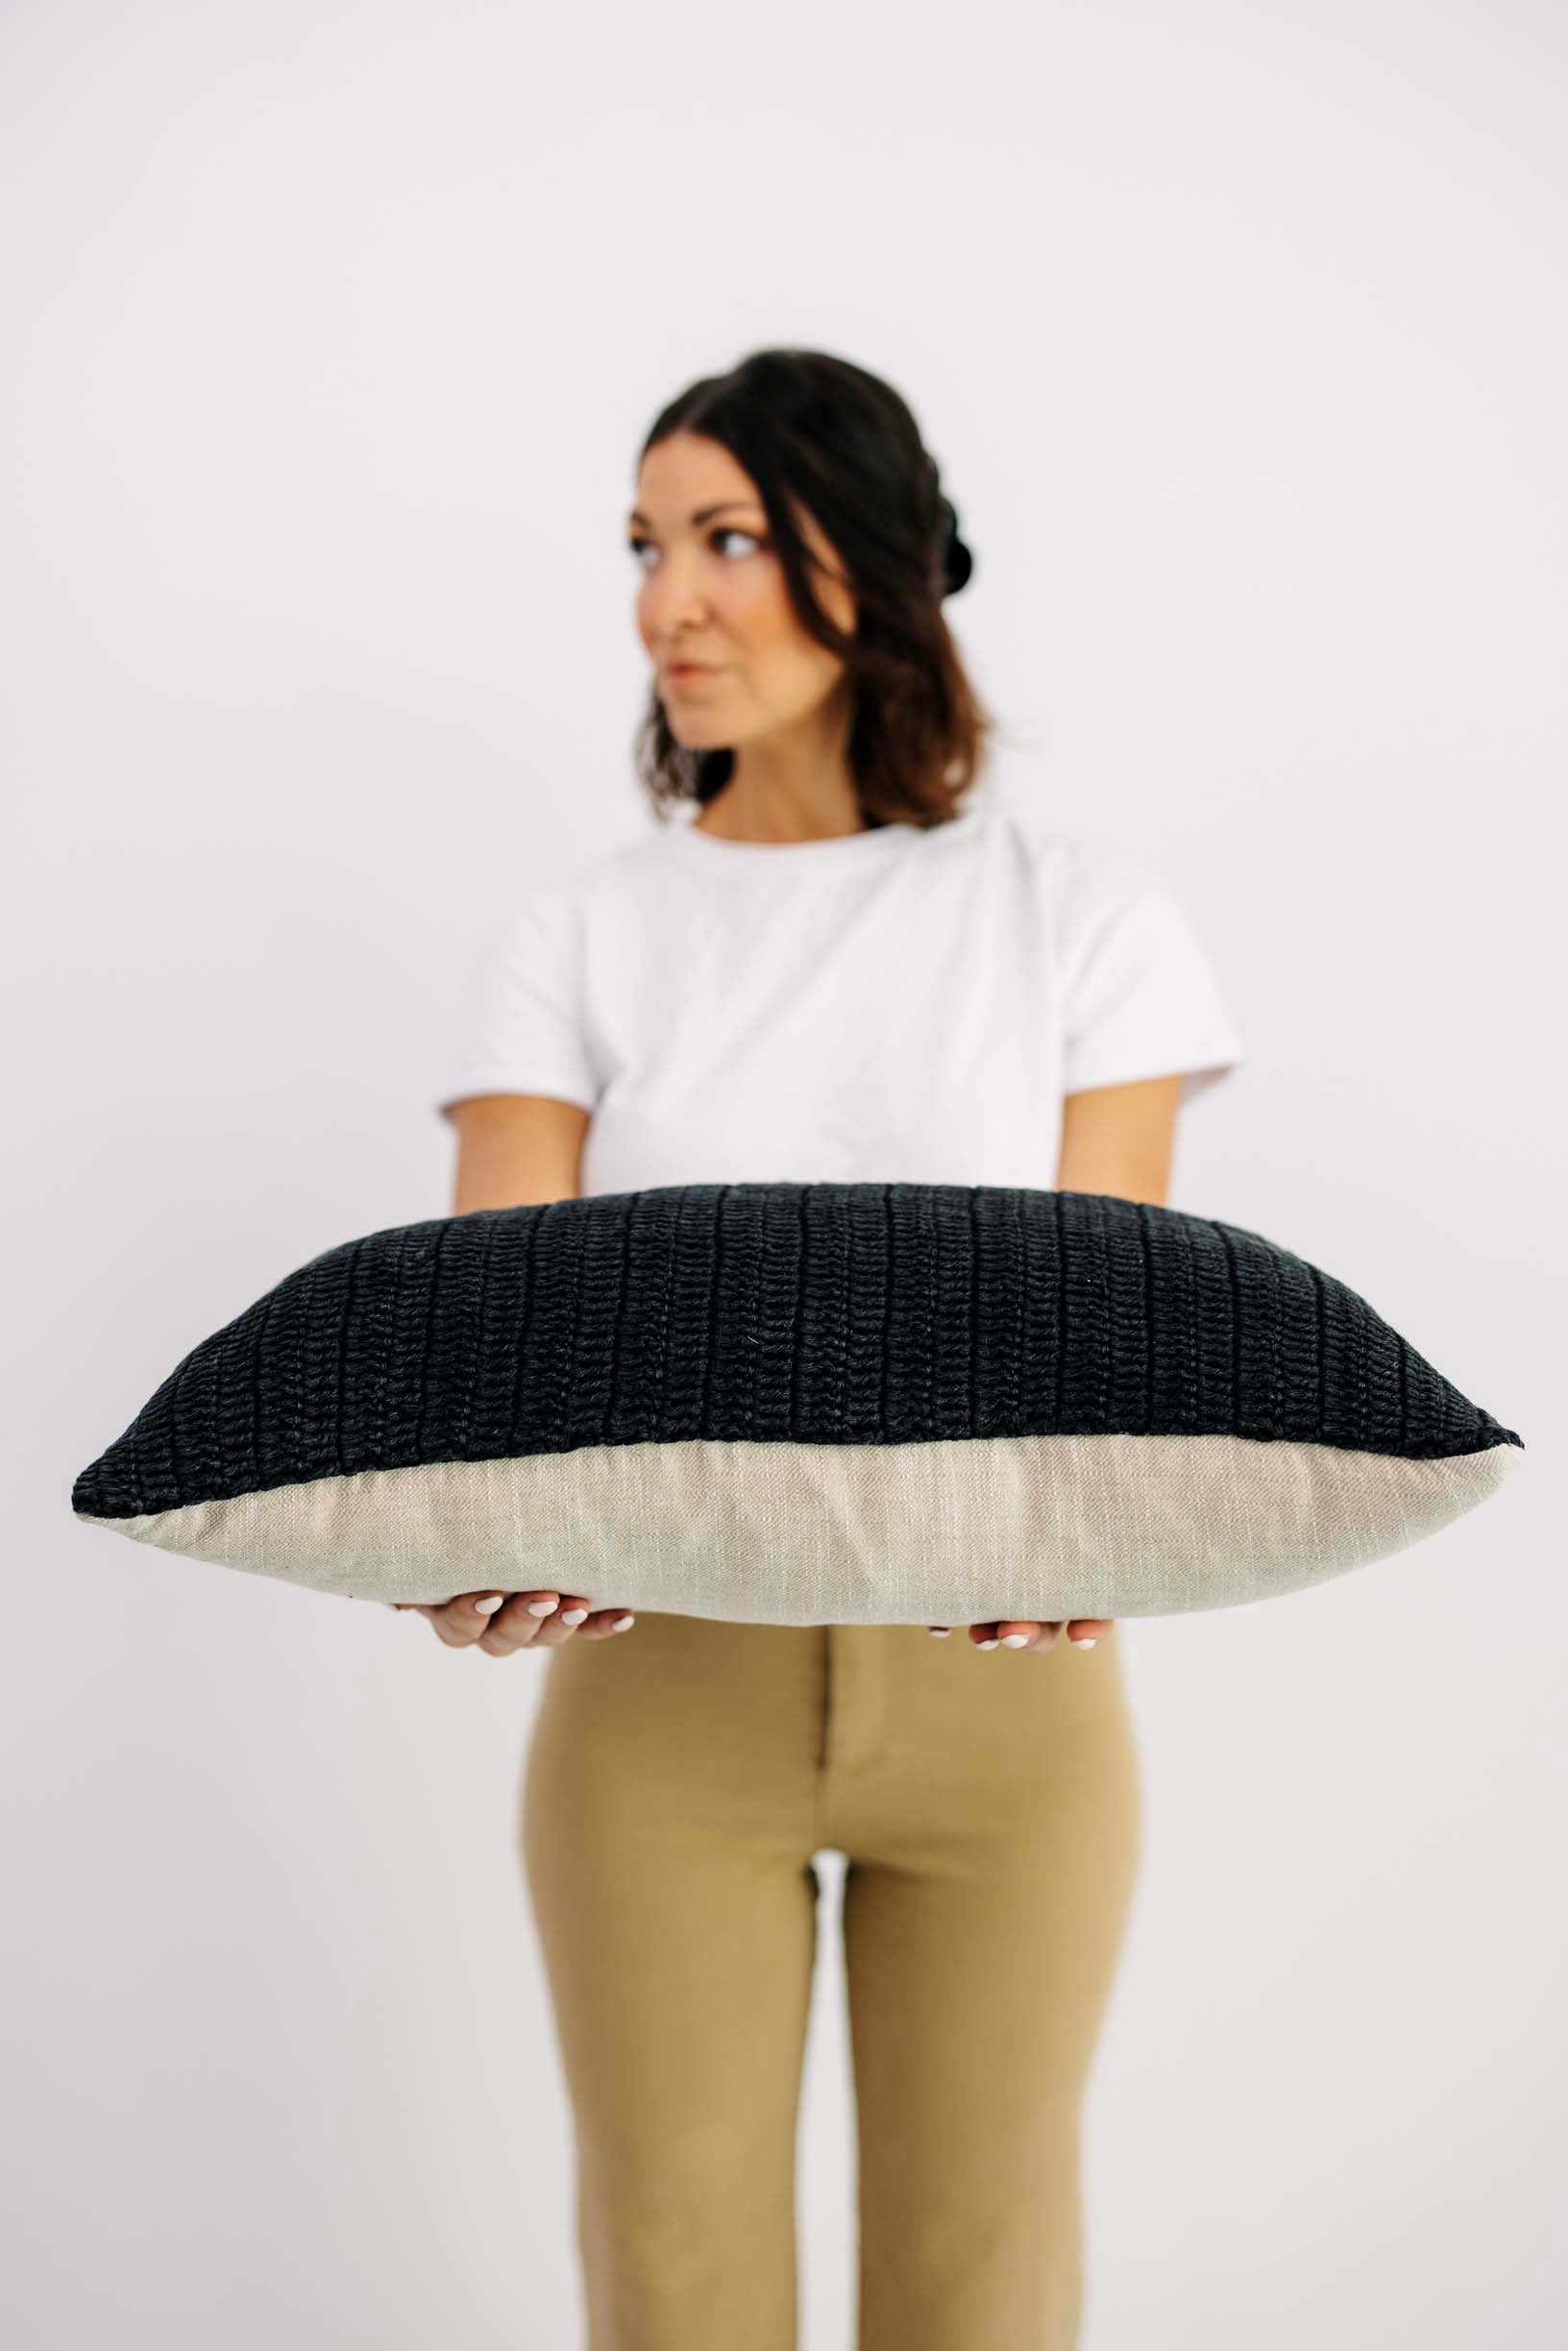 Maverick Lumbar Pillow - Black